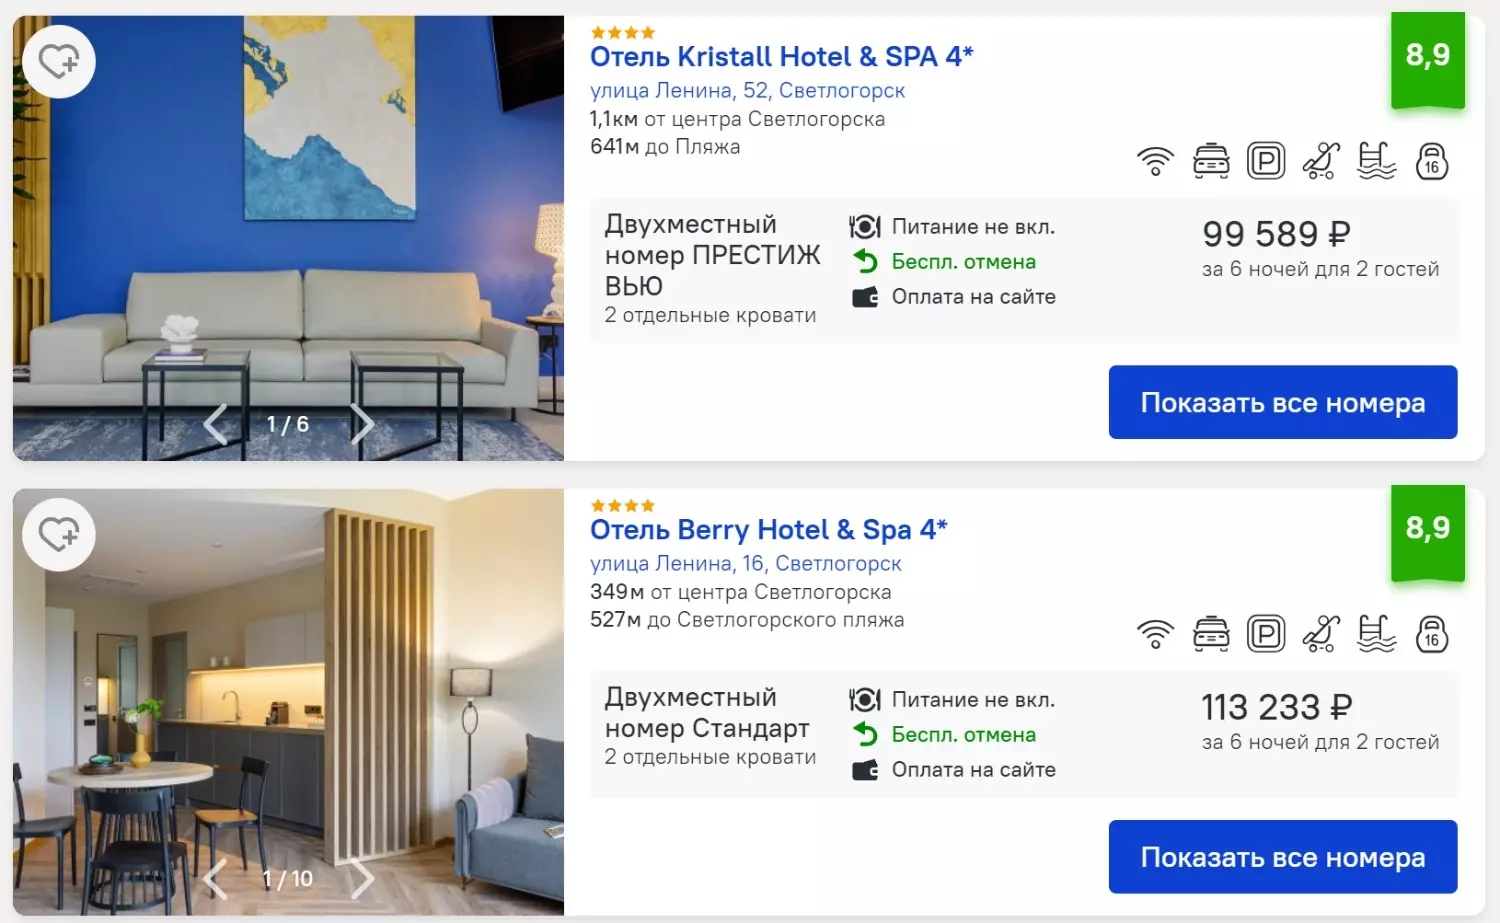 Отели в Светлогорске дорогие, но проживание в апартаментах в 2 раза дешевле